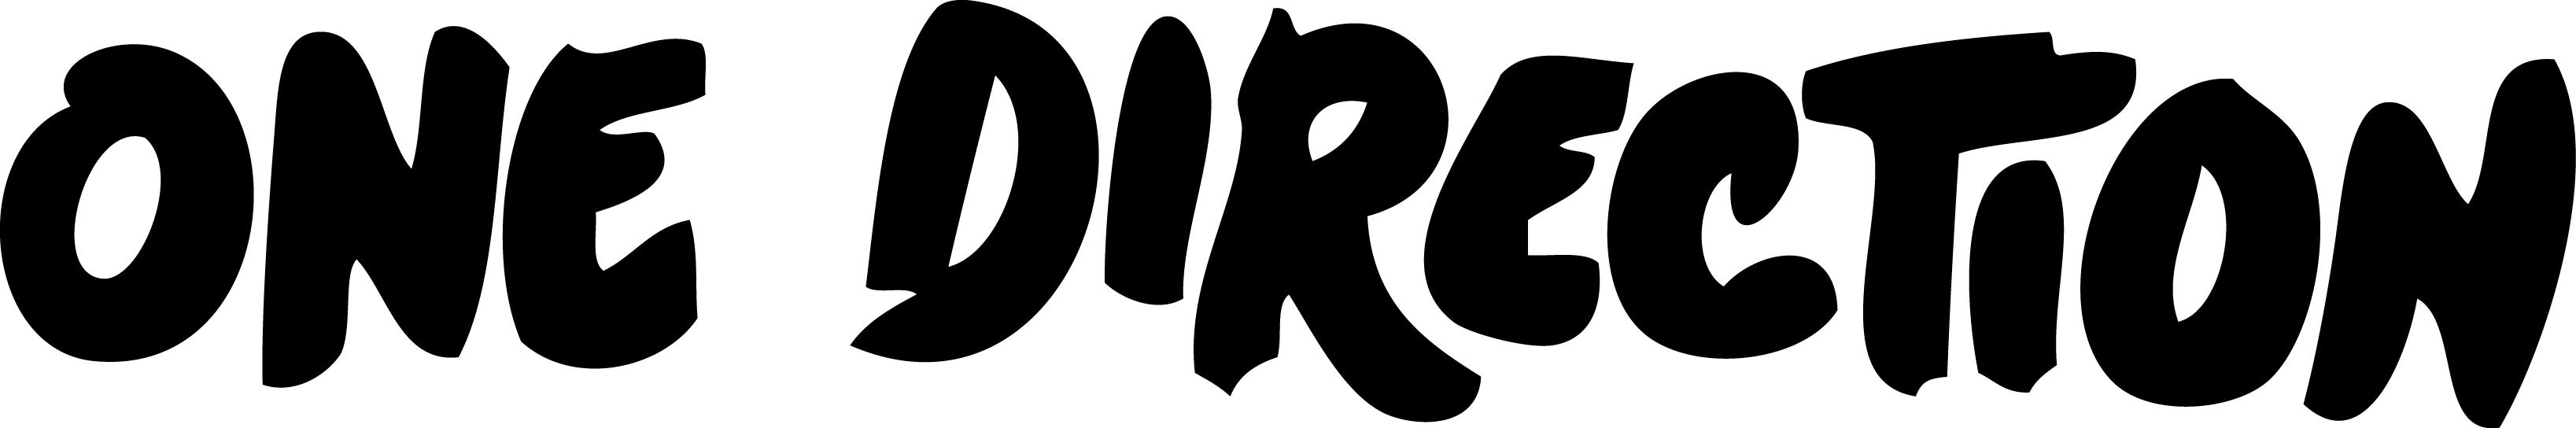 One direction logo clip art jpg